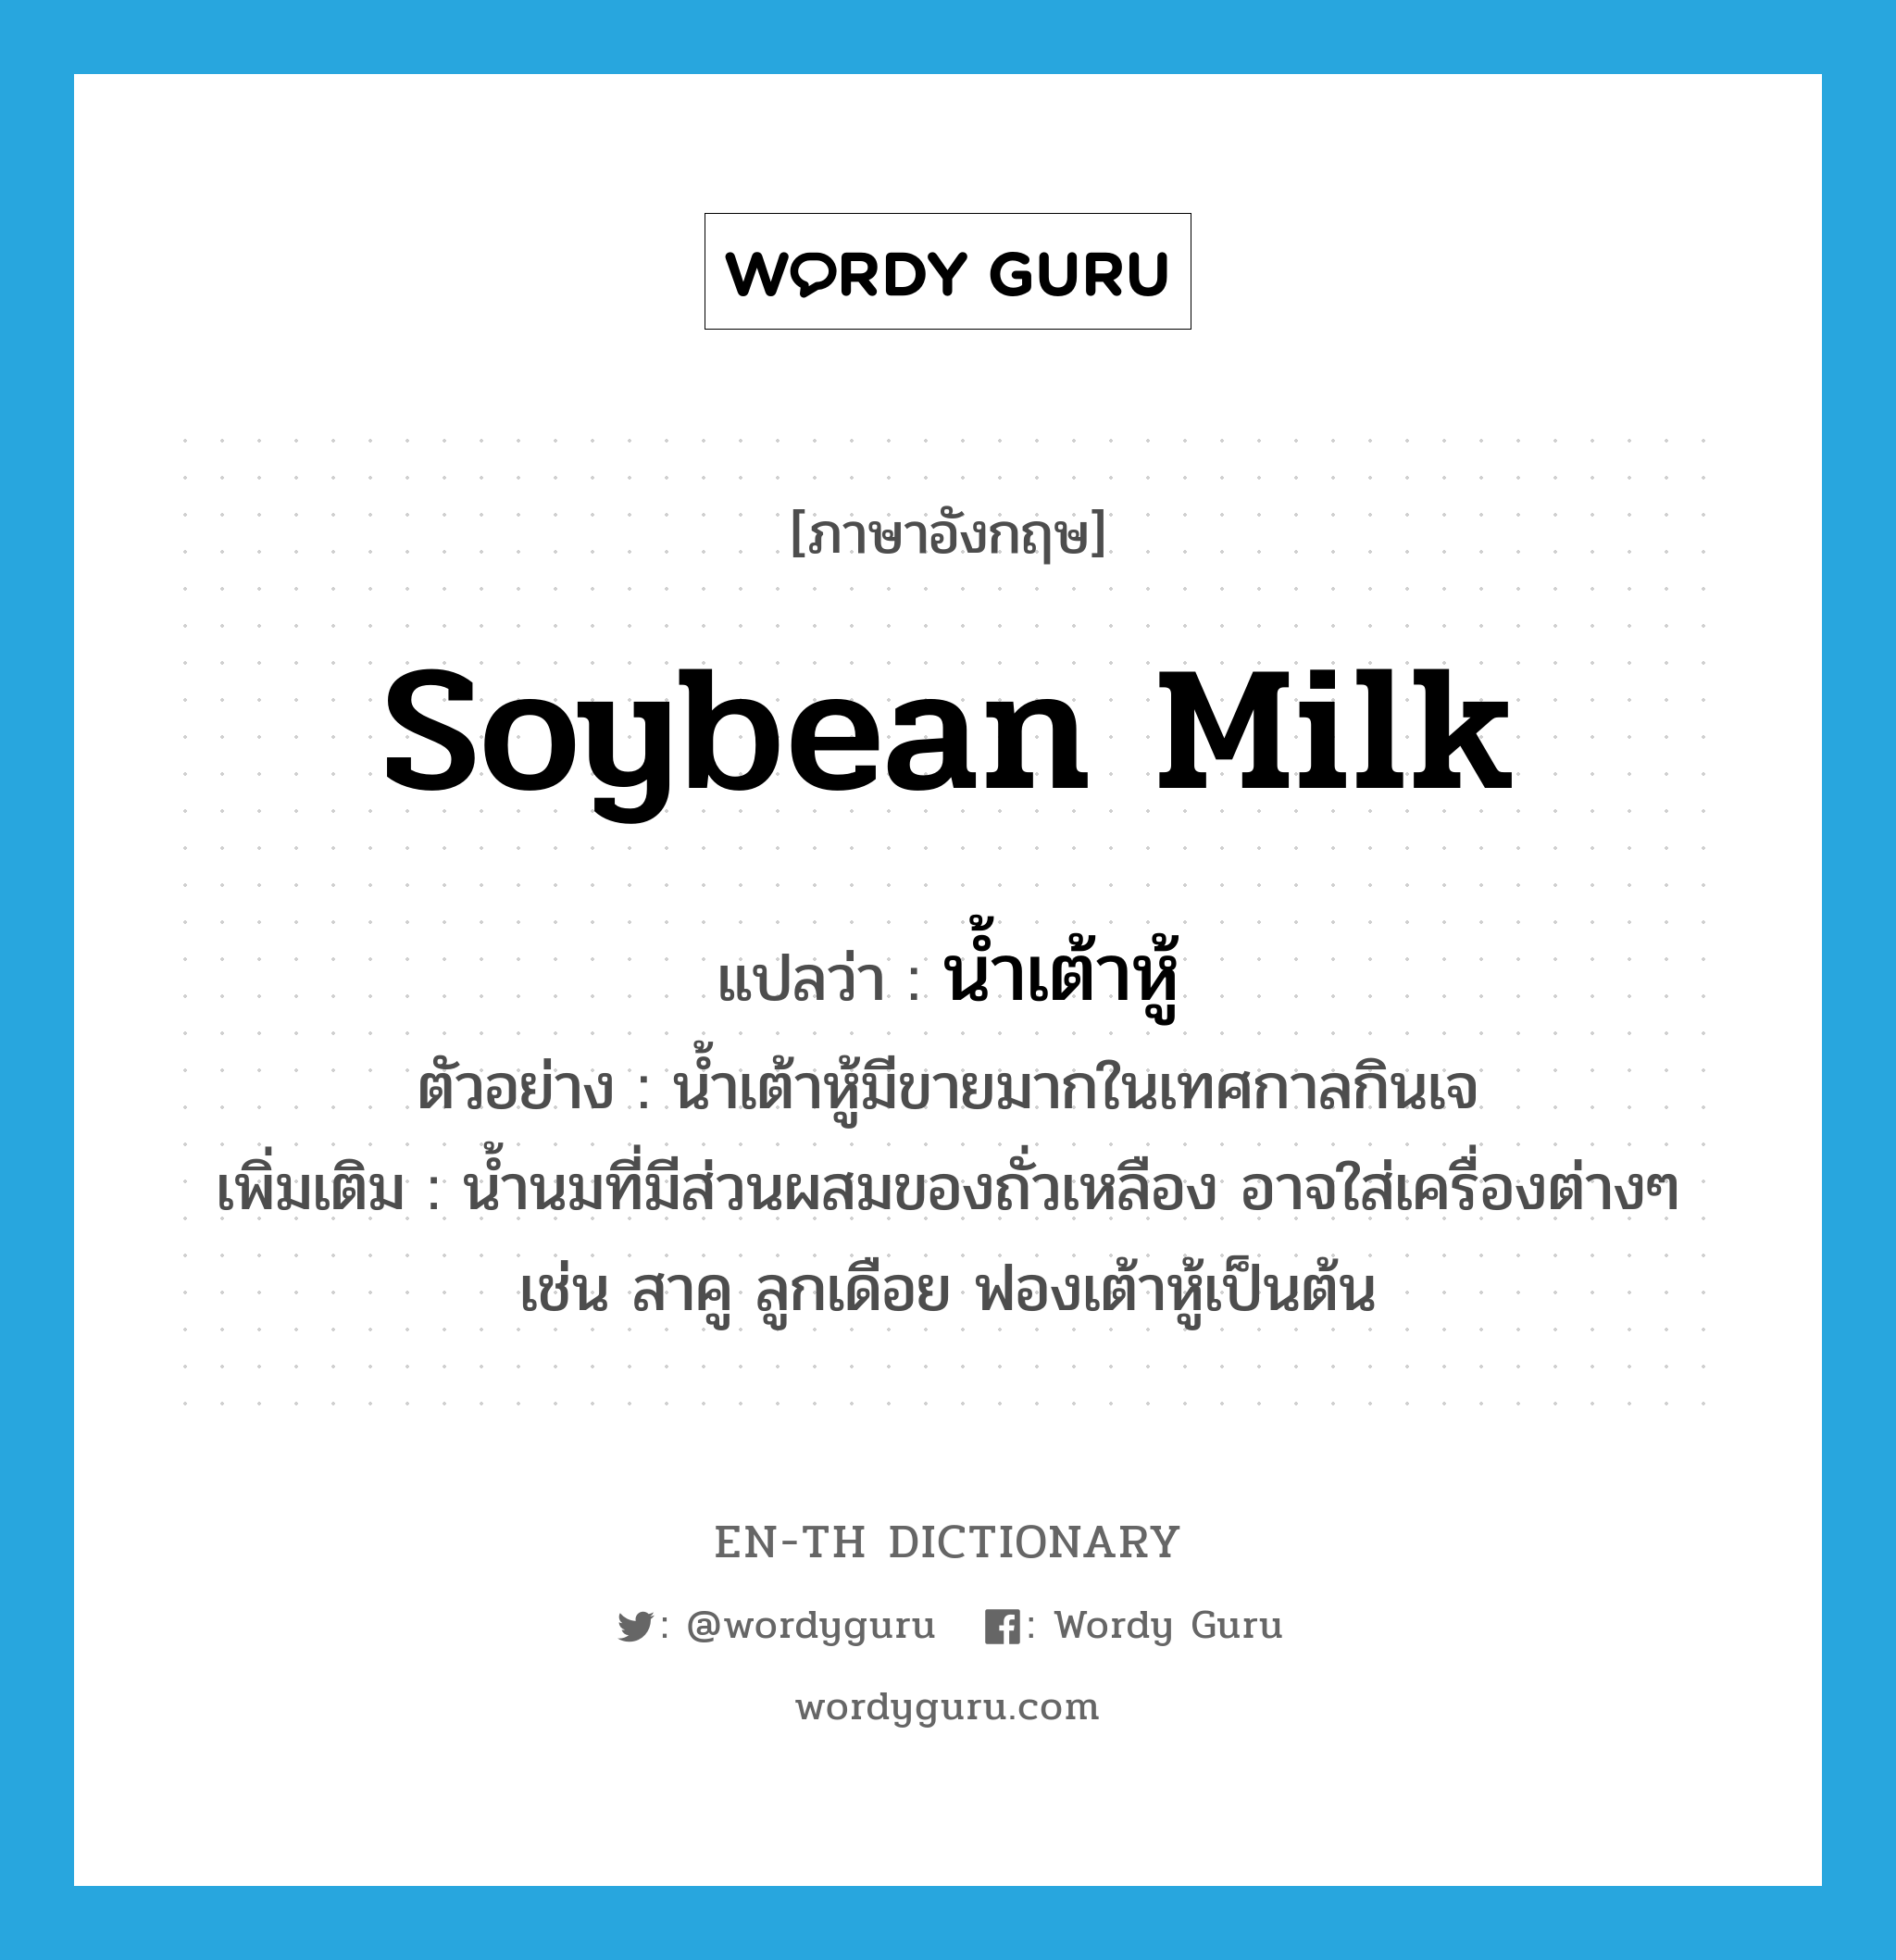 น้ำเต้าหู้ ภาษาอังกฤษ?, คำศัพท์ภาษาอังกฤษ น้ำเต้าหู้ แปลว่า soybean milk ประเภท N ตัวอย่าง น้ำเต้าหู้มีขายมากในเทศกาลกินเจ เพิ่มเติม น้ำนมที่มีส่วนผสมของถั่วเหลือง อาจใส่เครื่องต่างๆ เช่น สาคู ลูกเดือย ฟองเต้าหู้เป็นต้น หมวด N